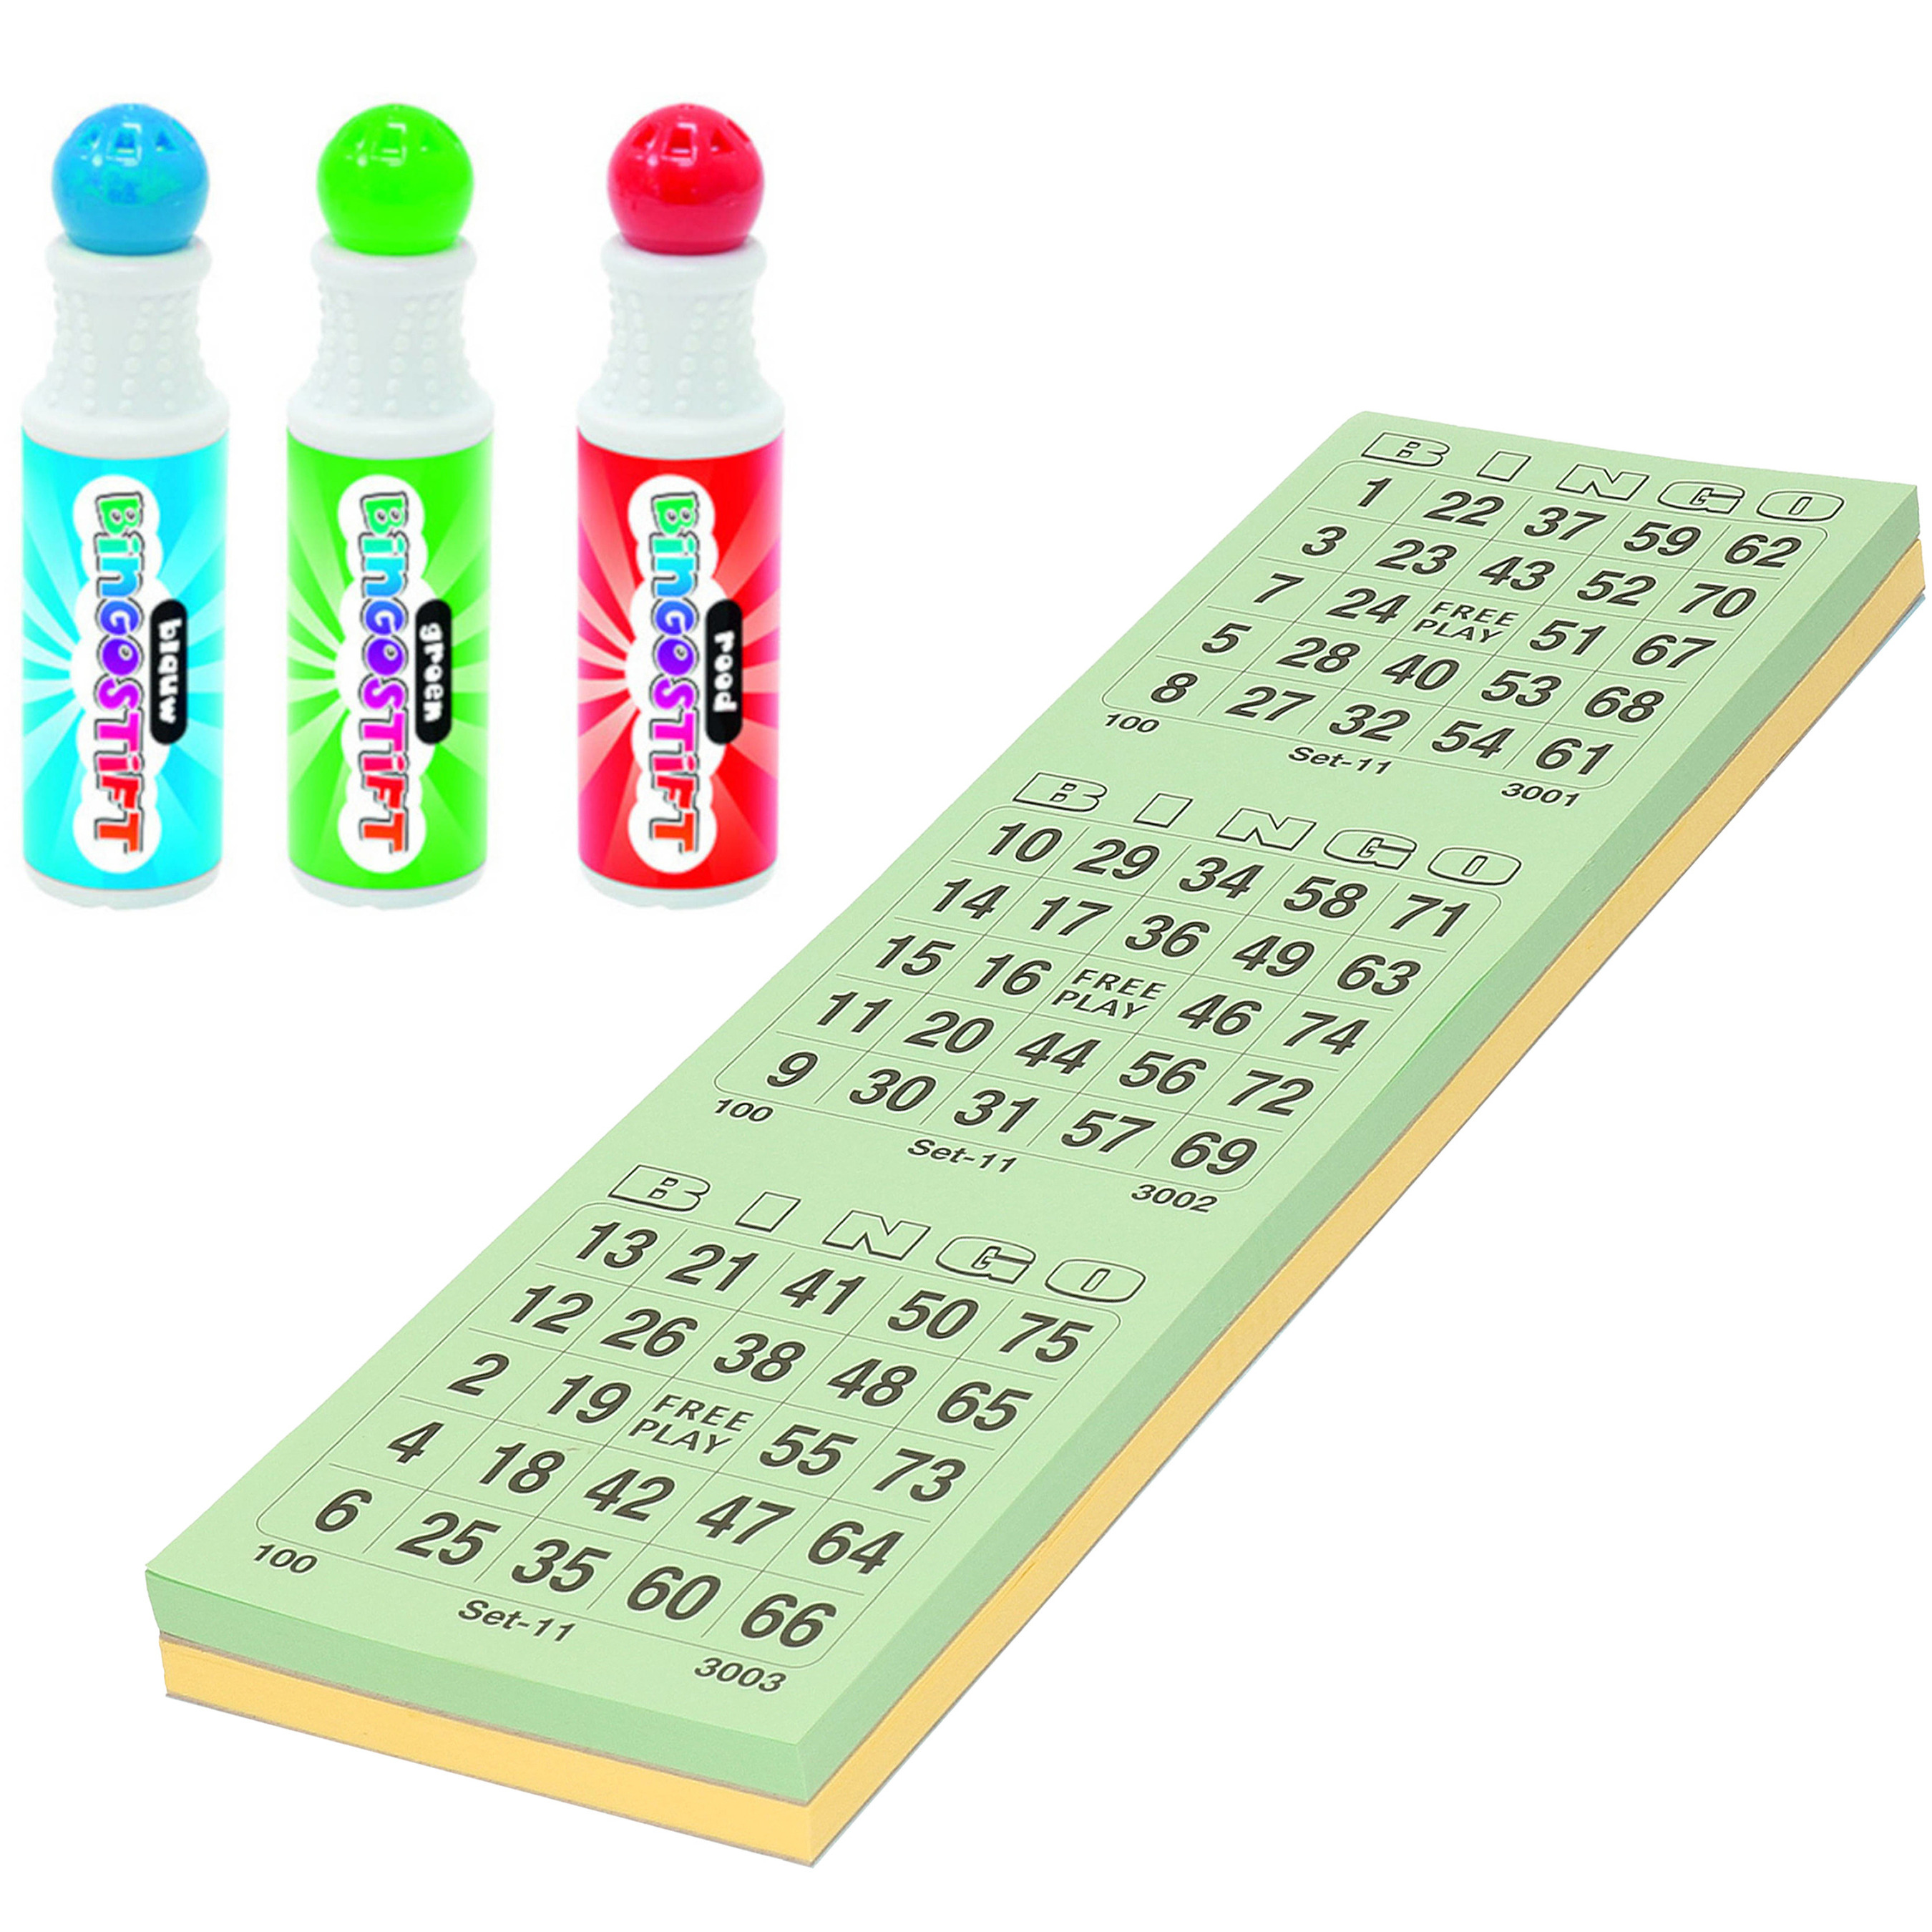 Grafix - Bingo set - 3x bingostiften en 200x Bingokaarten nummers 1-75